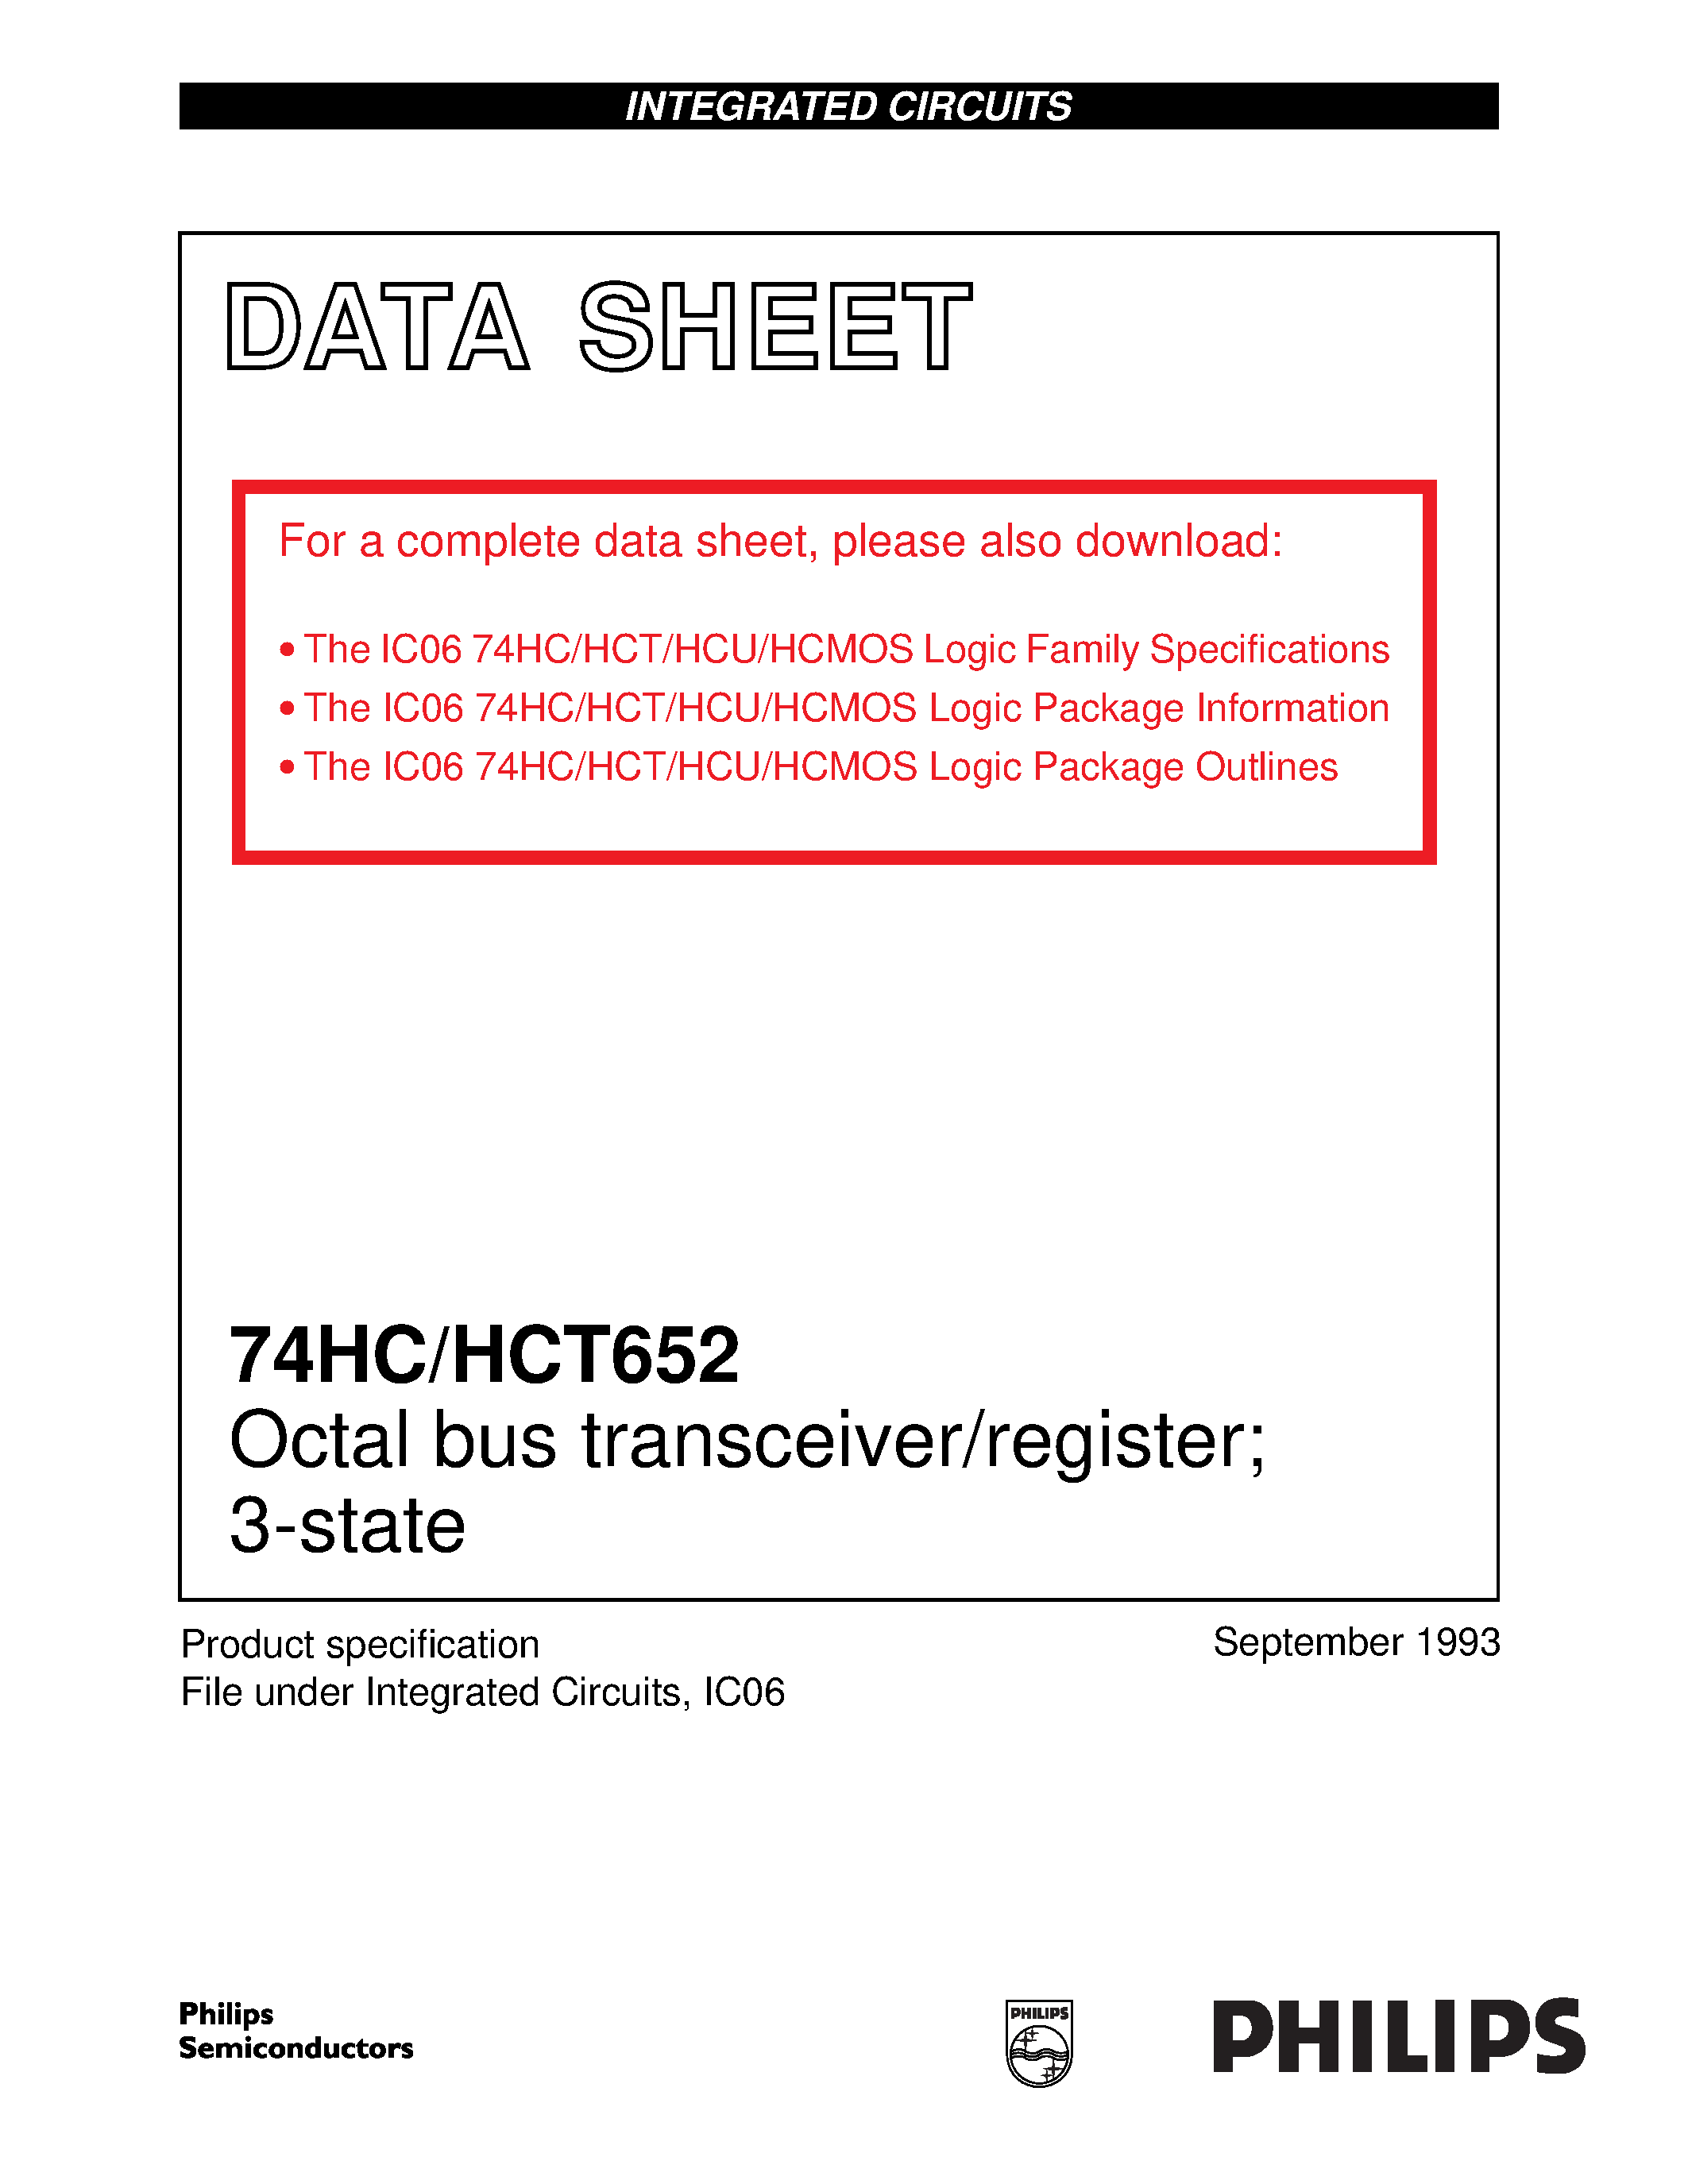 Даташит 74HCT652 - Octal bus transceiver/register; 3-state страница 1